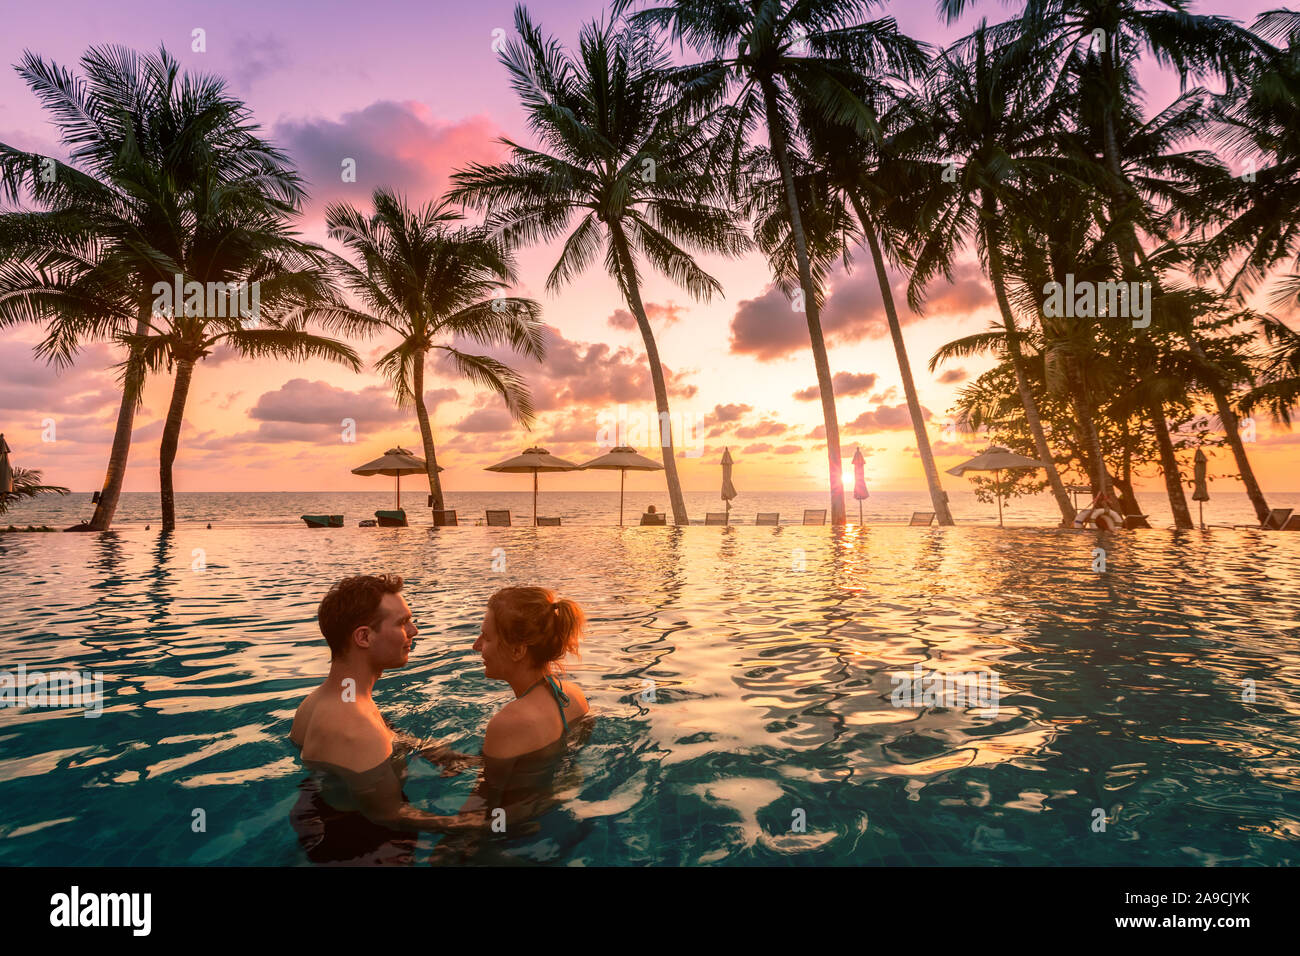 Paar am Strand Urlaub Ferien Resort entspannen im Pool mit herrlichem tropischen Landschaft bei Sonnenuntergang, romantischen Sommer Honeymoon Island destinat Stockfoto